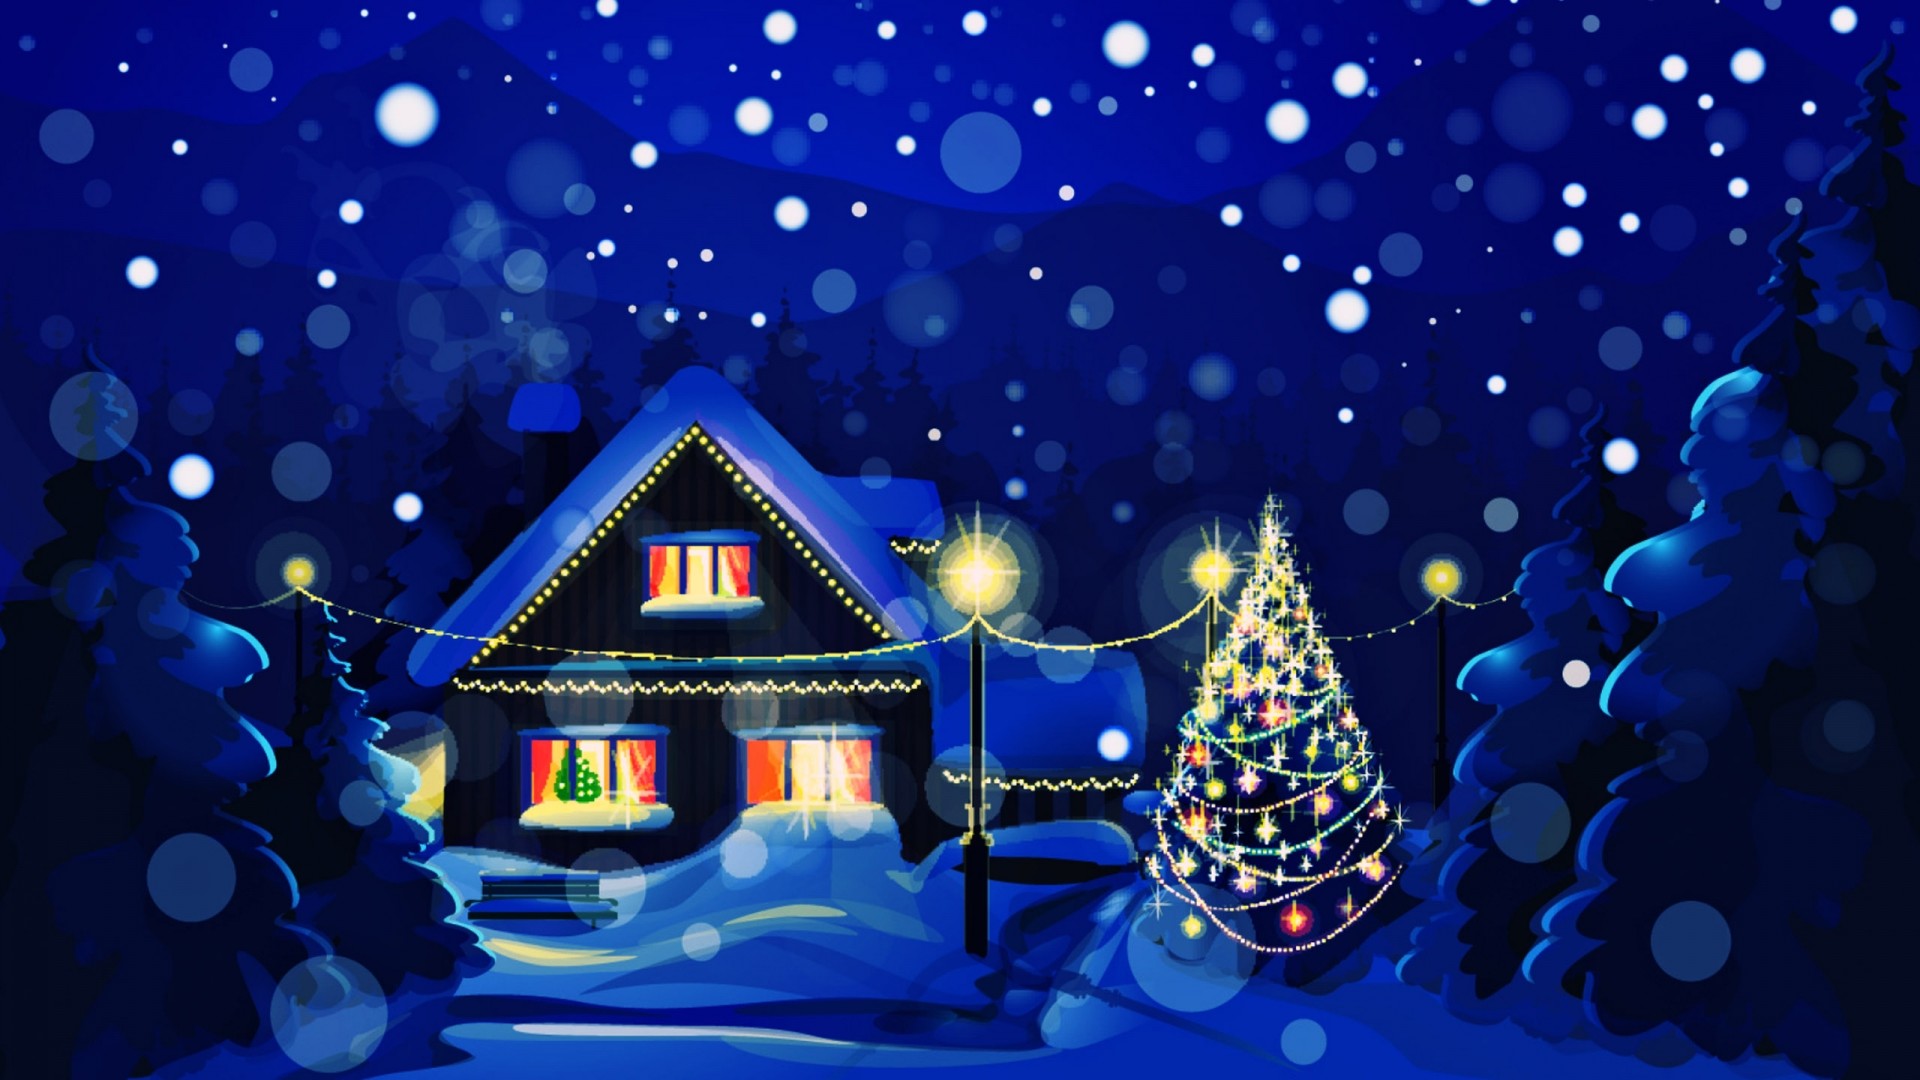 tapete weihnachten,heiligabend,weihnachten,winter,baum,himmel